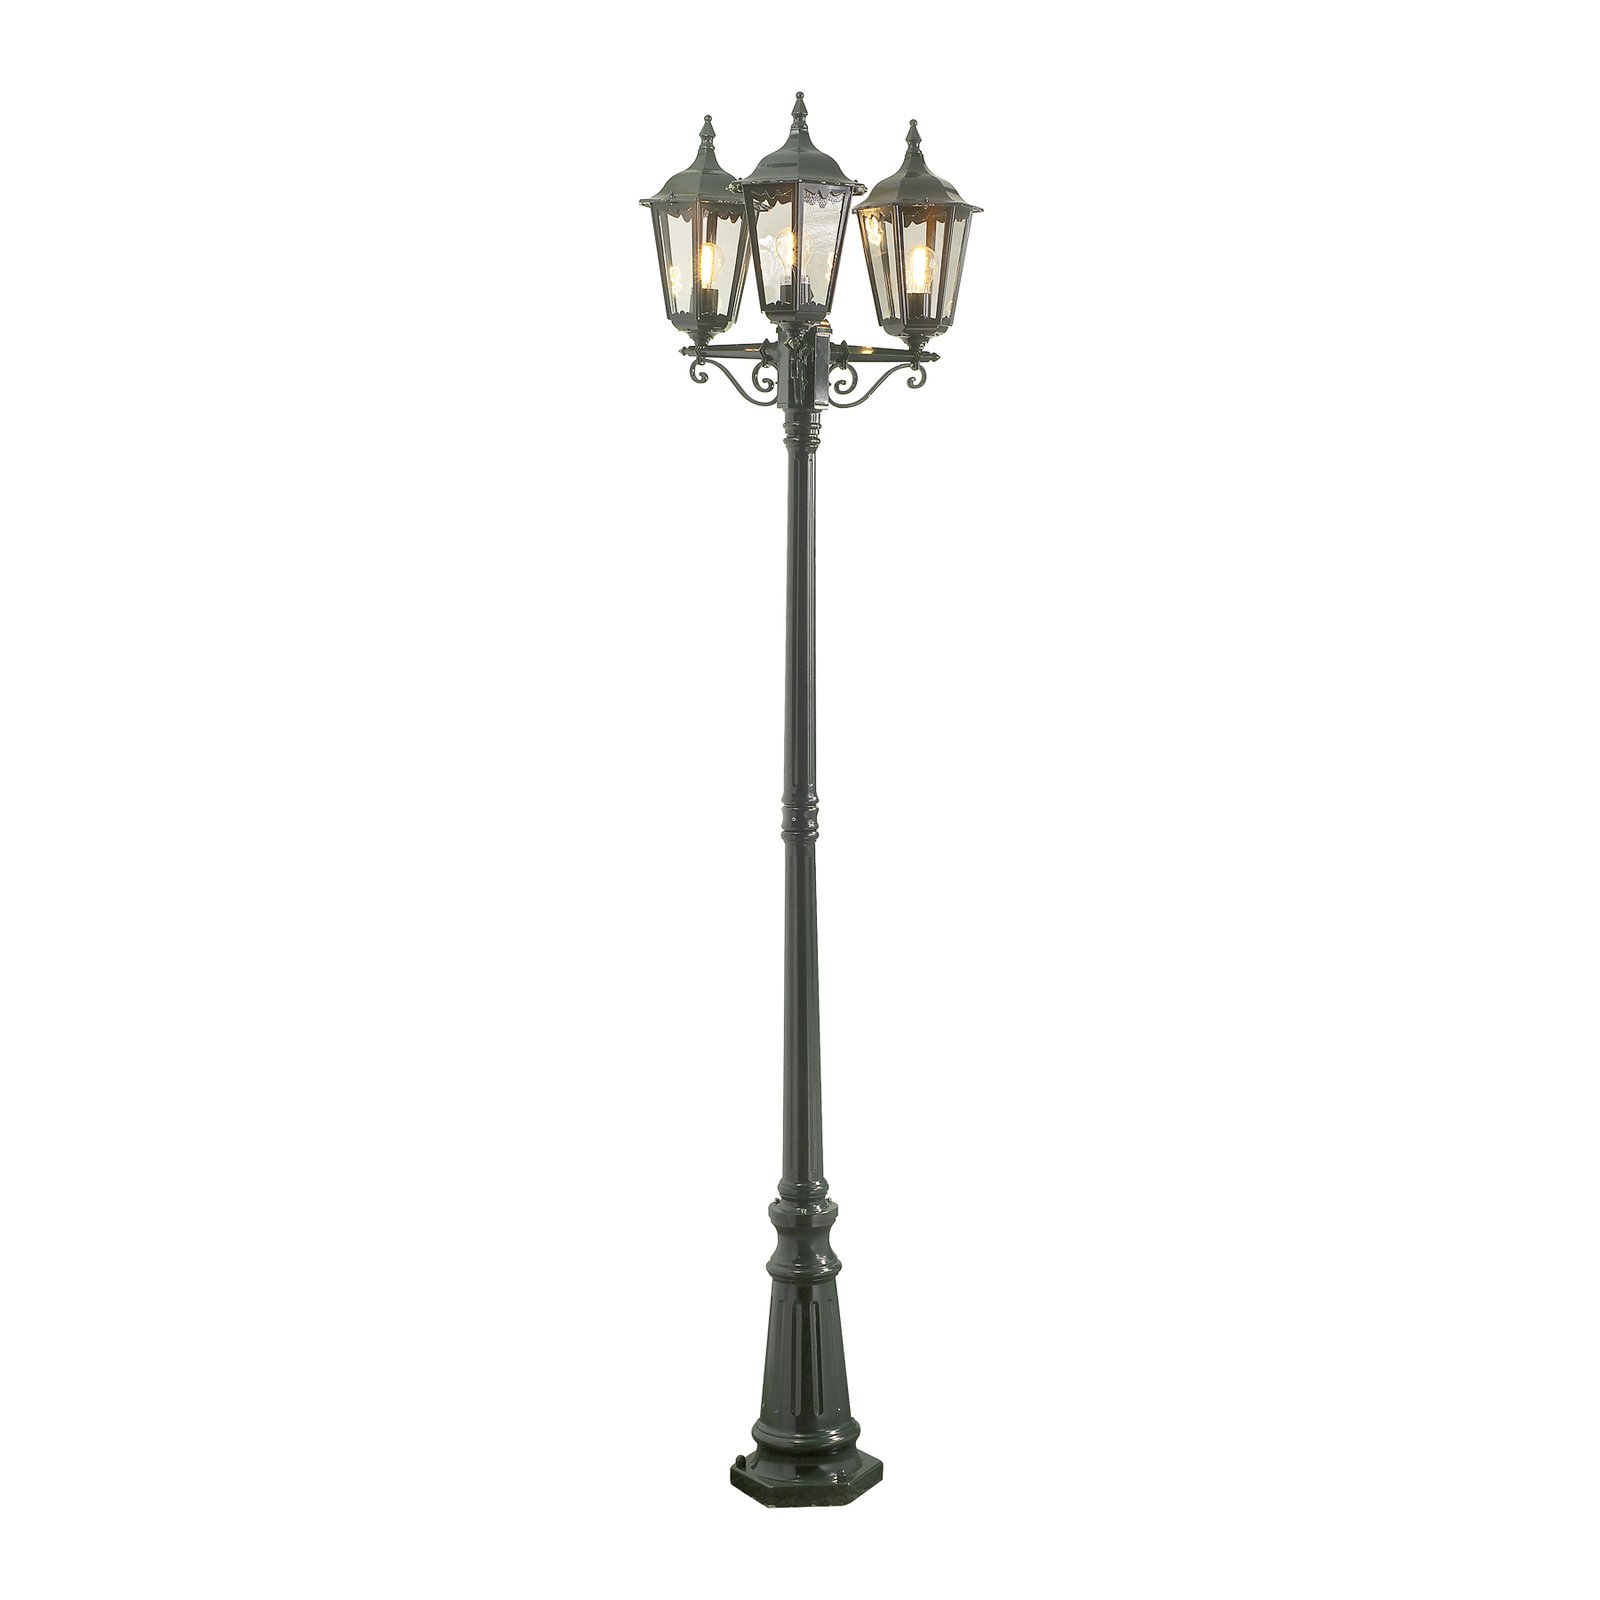 Firenze lamp post, 3-bulb, green